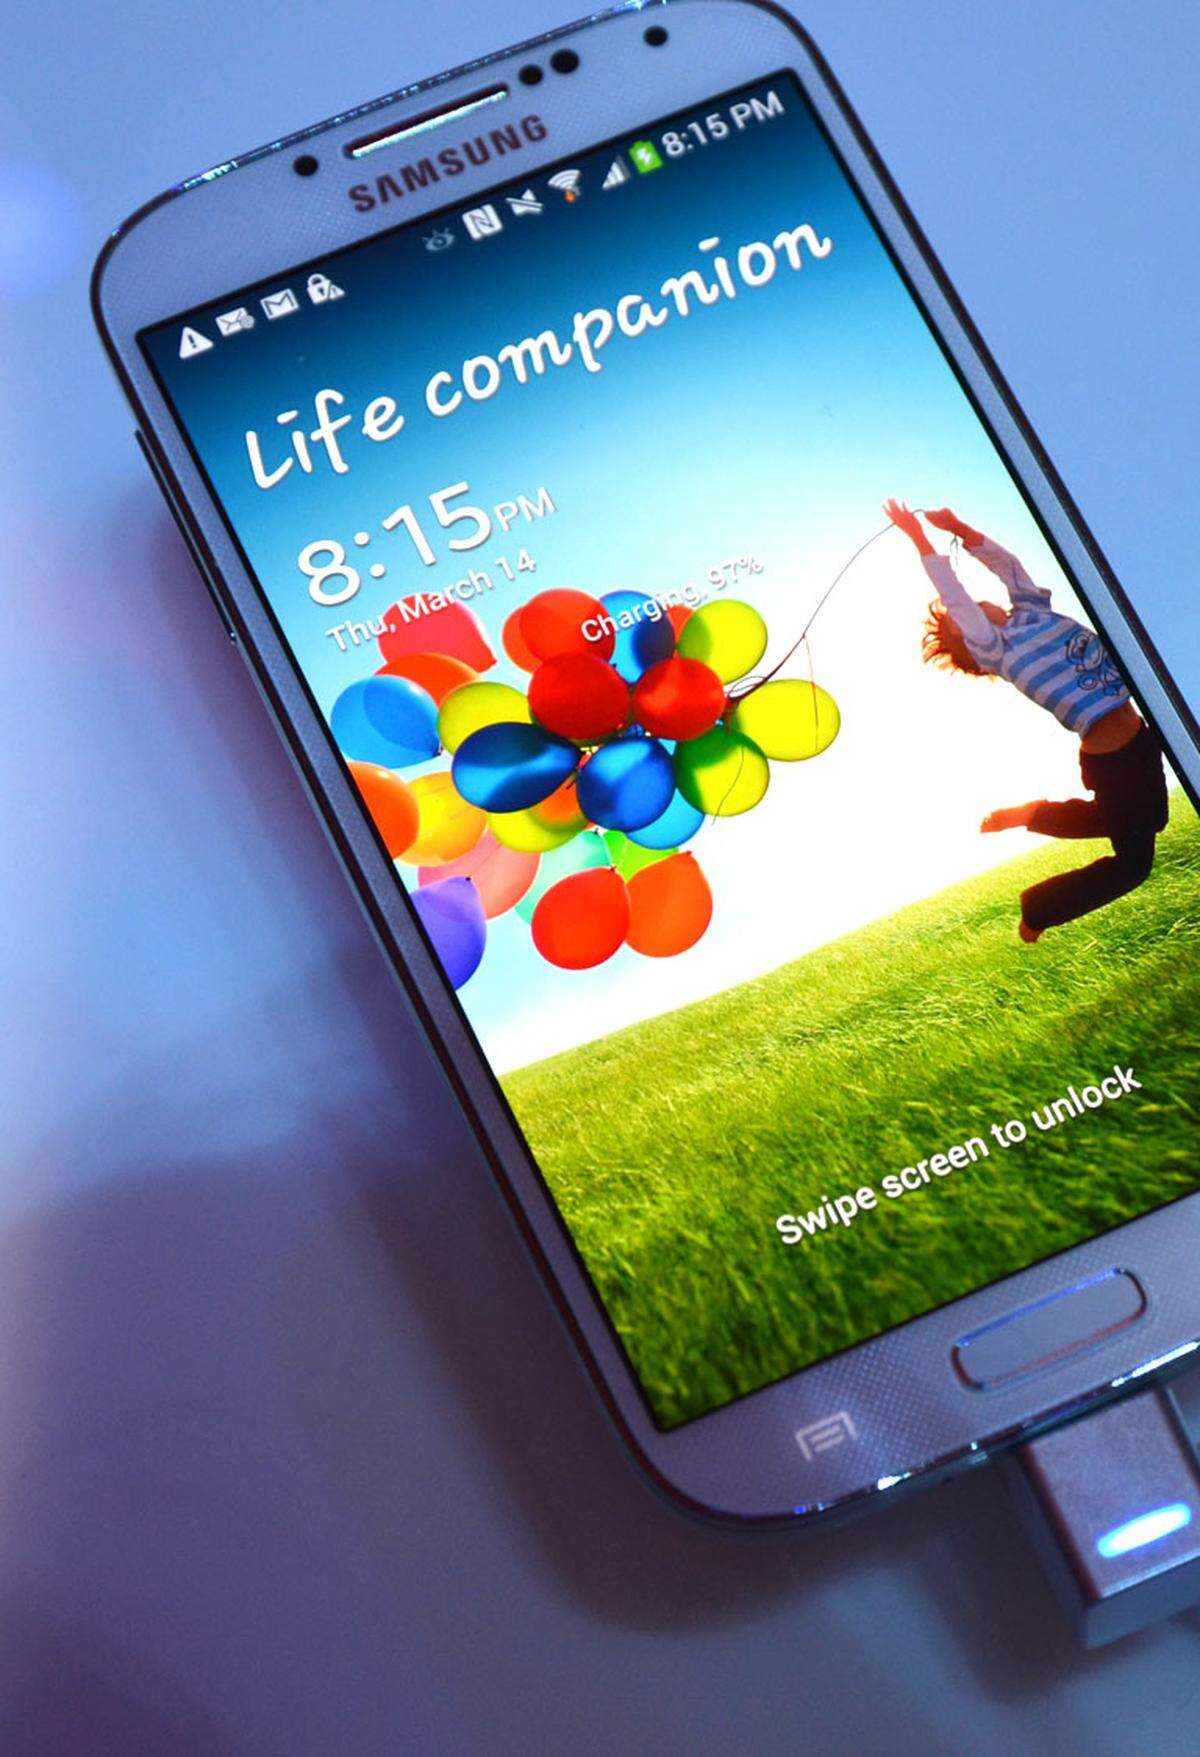 Samsung hat in der Nacht auf Freitag in New York das Galaxy S4 vorgestellt. Die Erwartungen an das neue Smartphone-Flaggschiff sind hoch - DiePresse.com hat sich vor Ort einen ersten Eindruck verschafft.